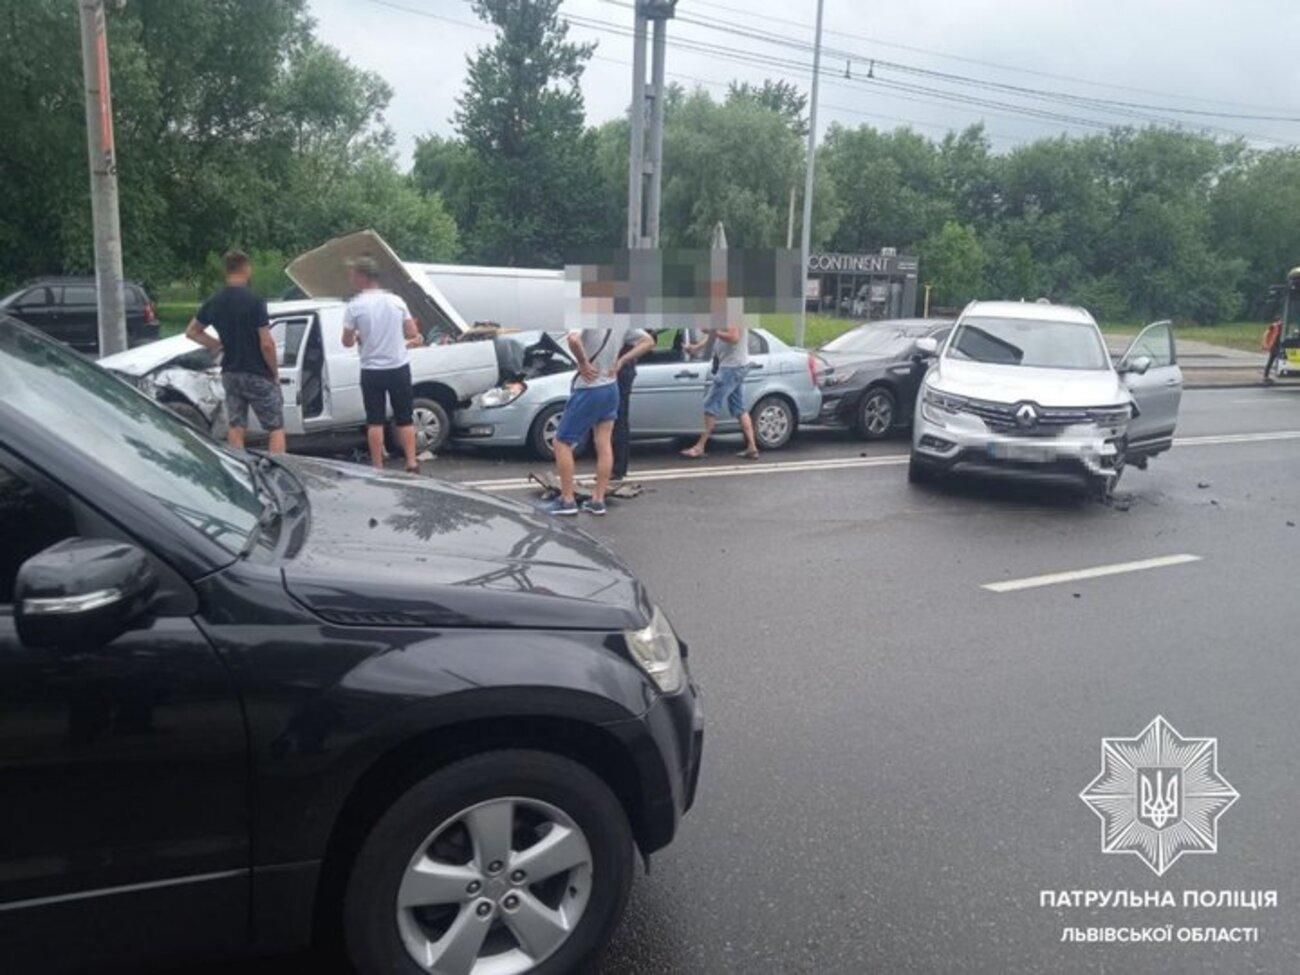 Масштабное ДТП во Львове: столкнулись сразу 6 автомобилей - фото